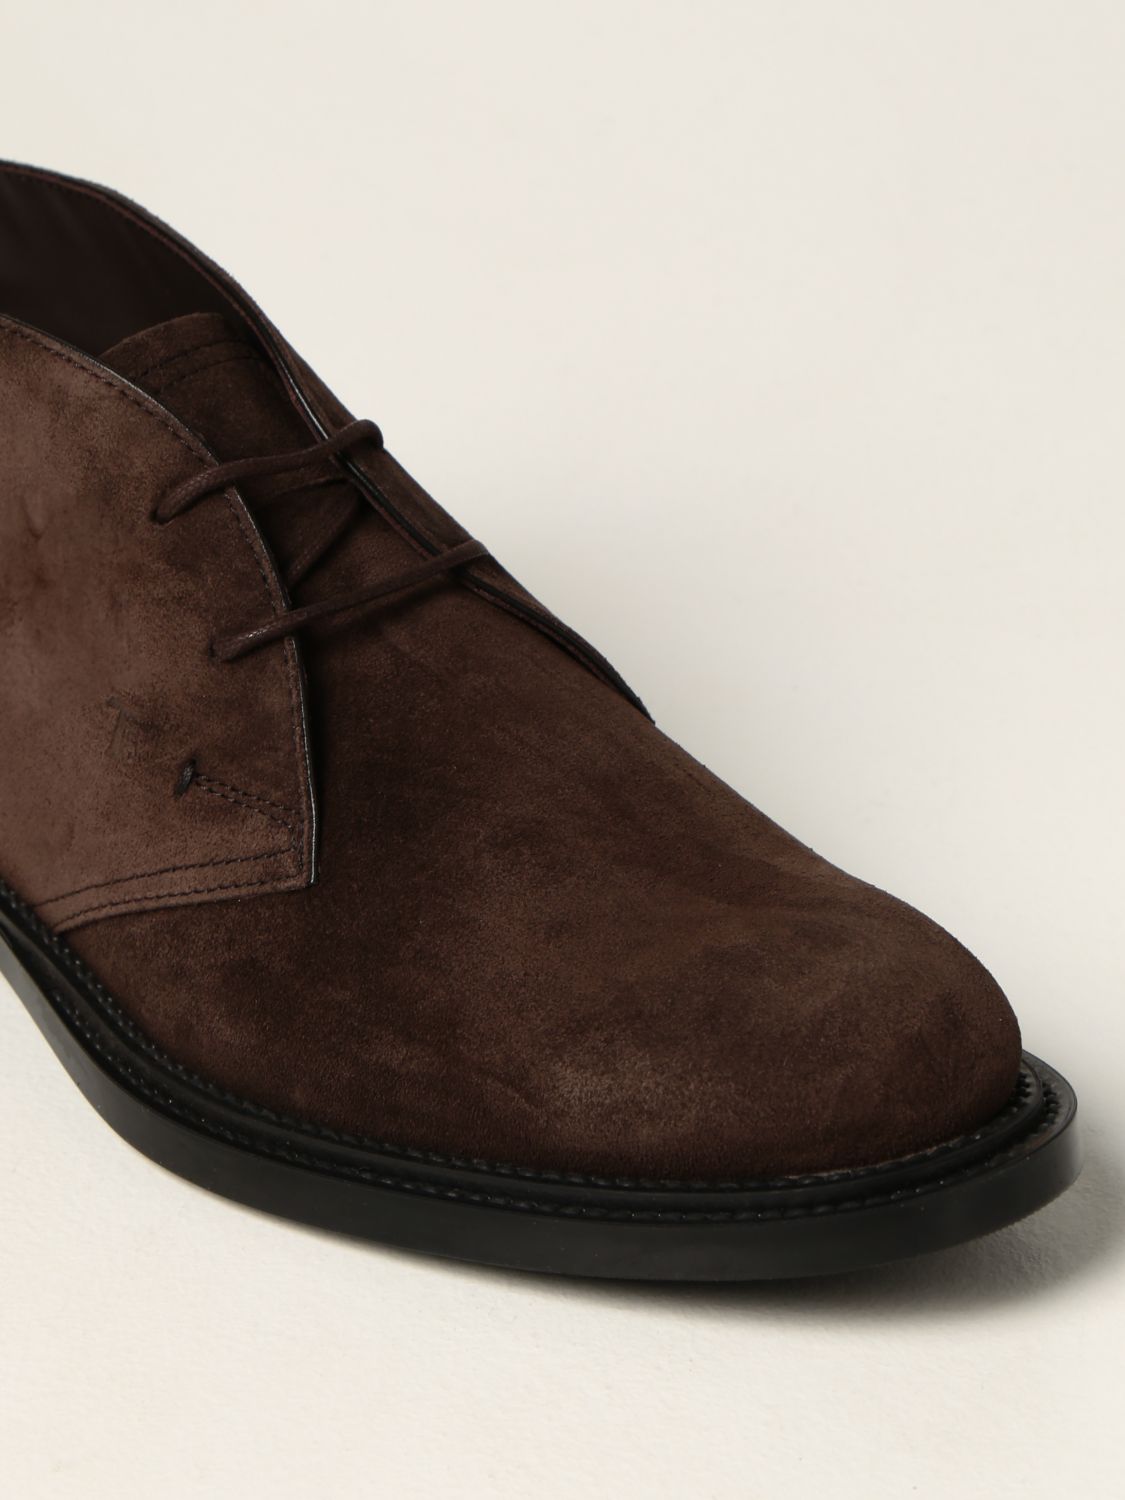 Zapatos abotinados Tod's: Zapatos hombre Tod's marrón oscuro 4